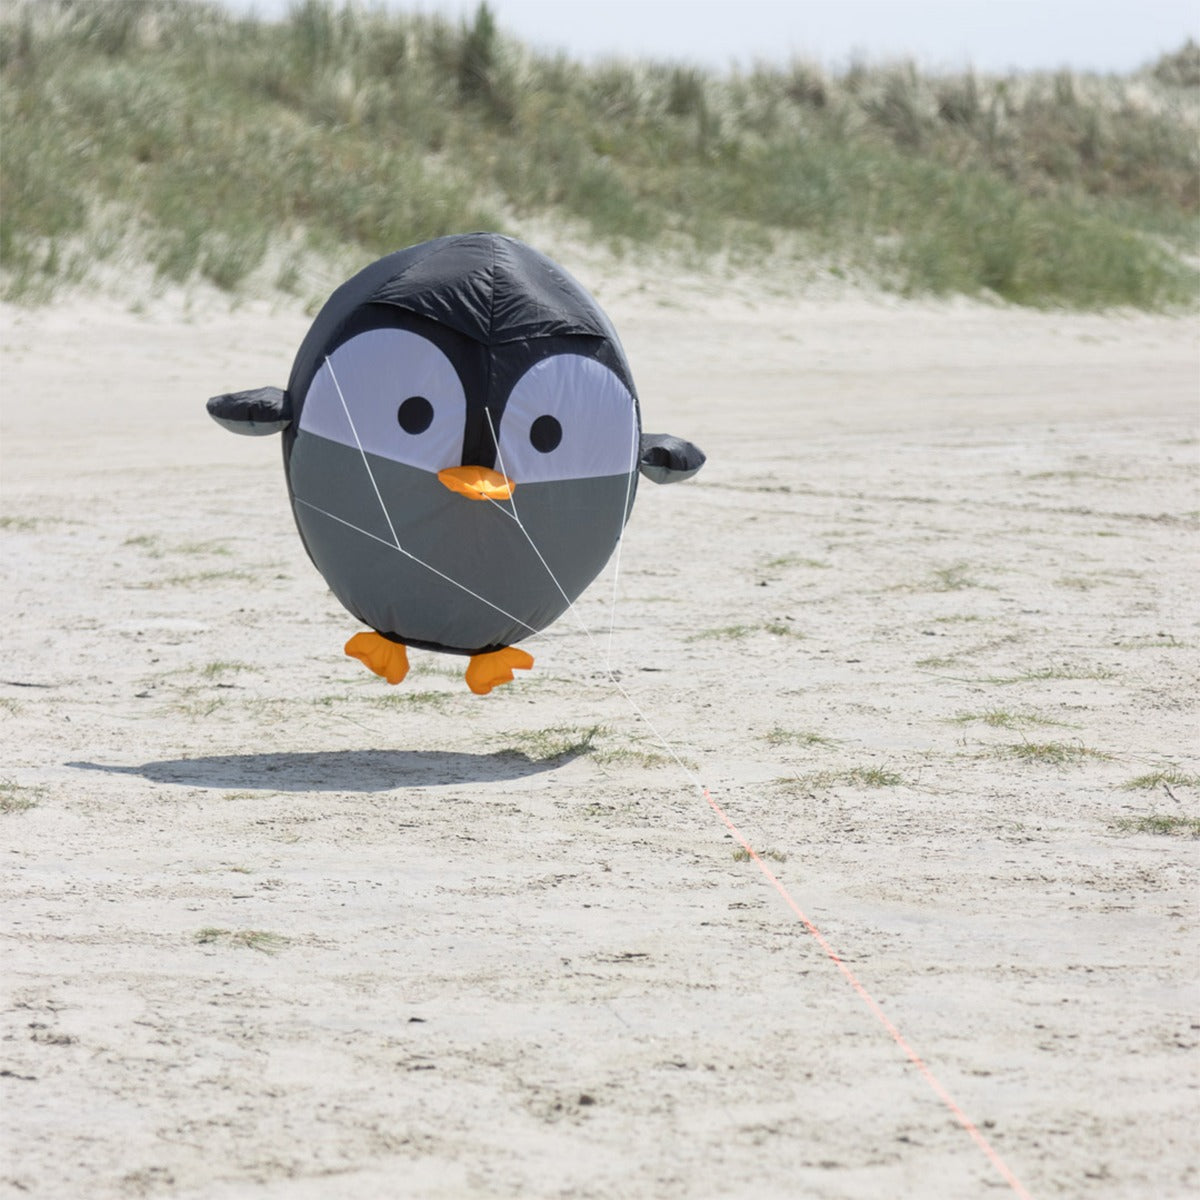 HQ Bodenwindspiel HQ Bouncing Birdeez Penguin 100 cm bunte Windspiele für den Garten oder Strand